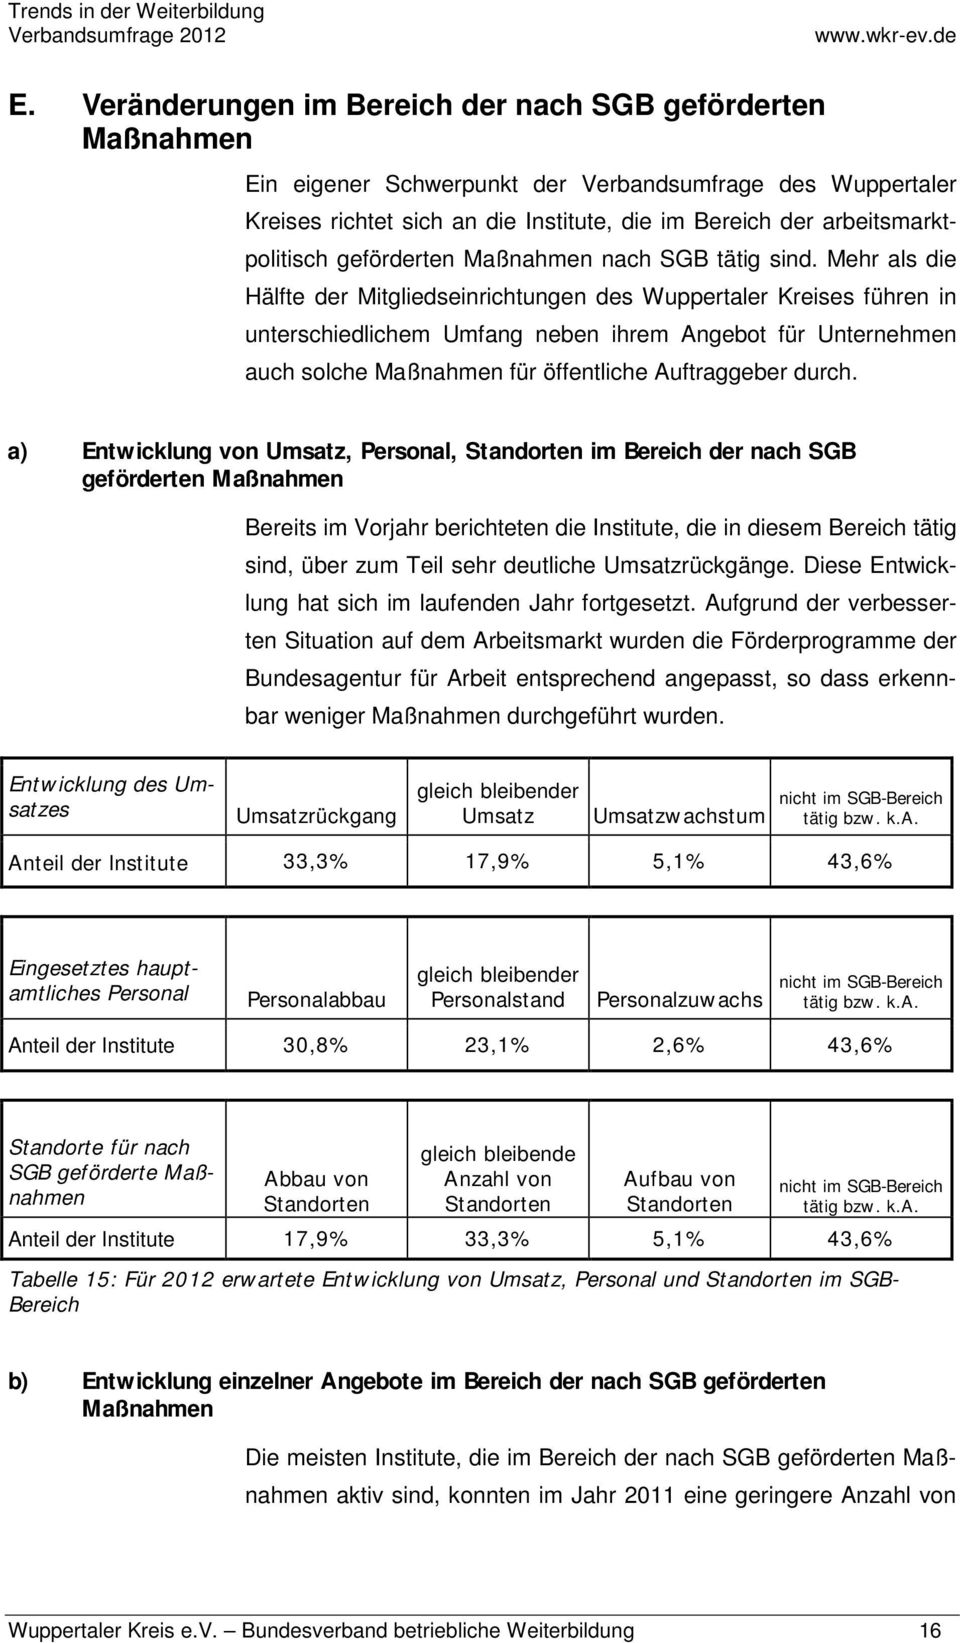 Mehr als die Hälfte der Mitgliedseinrichtungen des Wuppertaler Kreises führen in unterschiedlichem Umfang neben ihrem Angebot für Unternehmen auch solche Maßnahmen für öffentliche Auftraggeber durch.